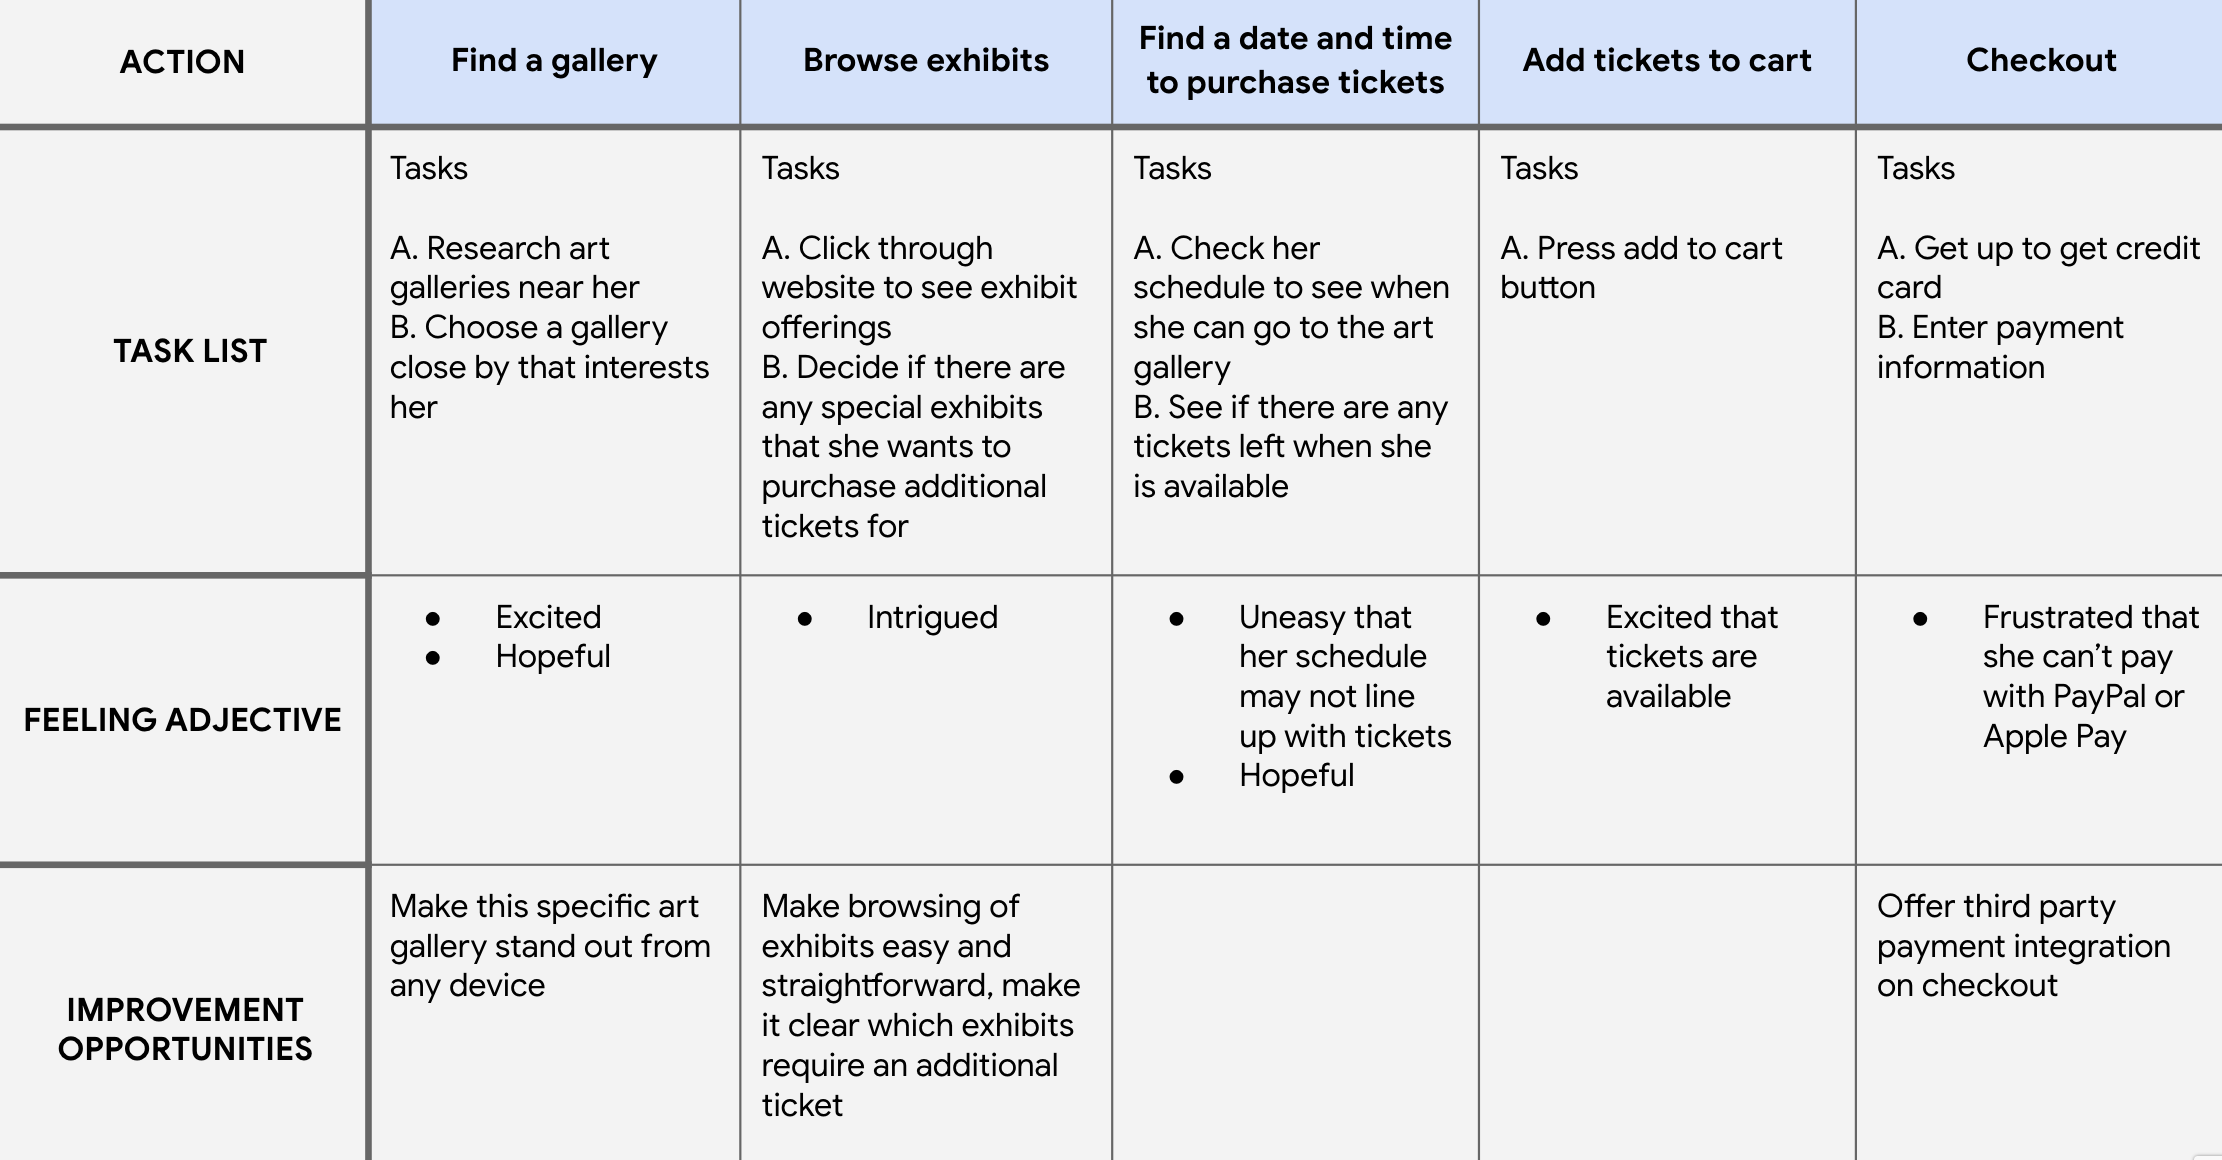 User Goal: Plan a trip to an art gallery